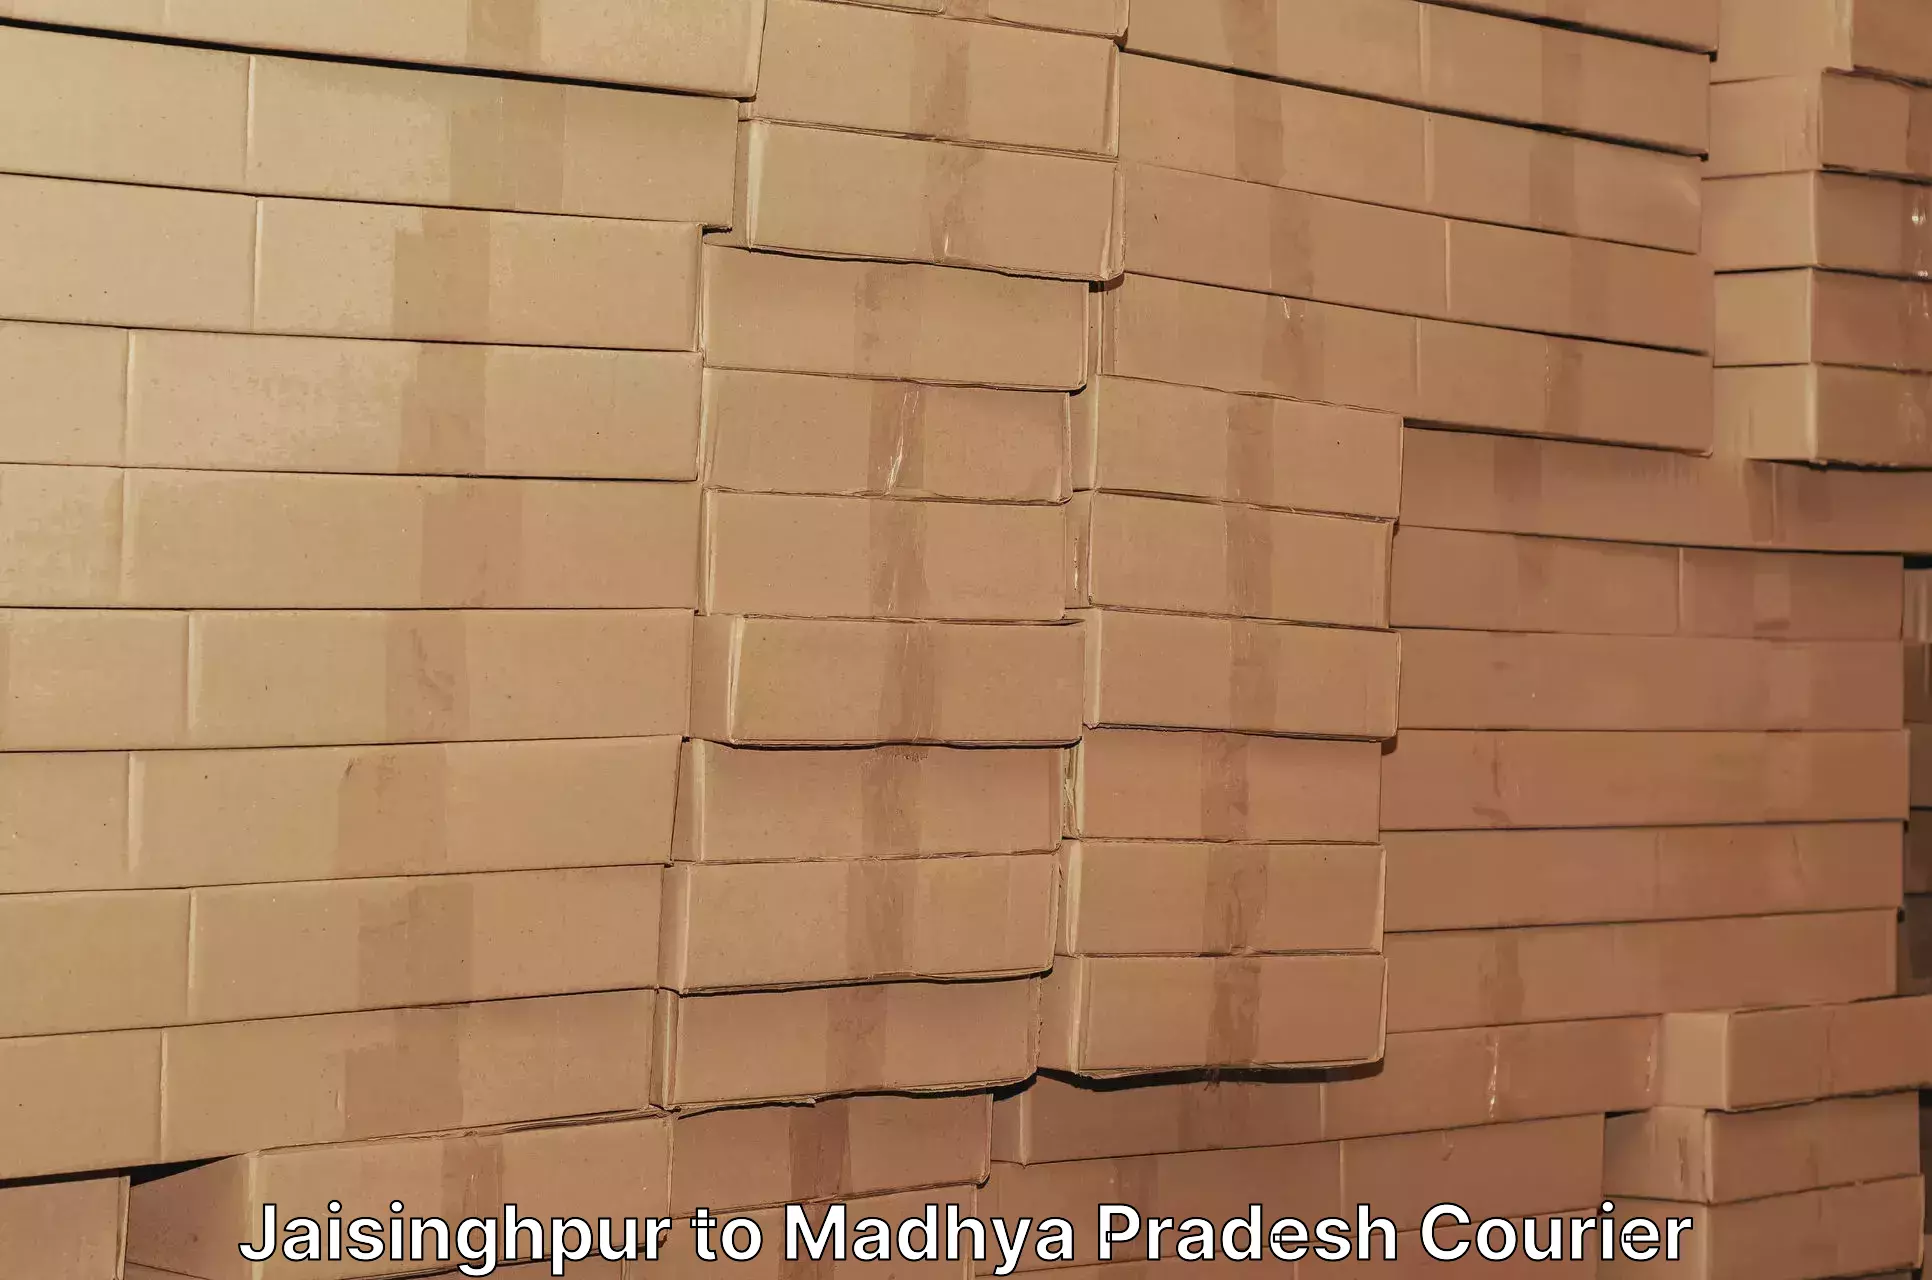 Efficient cargo services Jaisinghpur to Jirapur